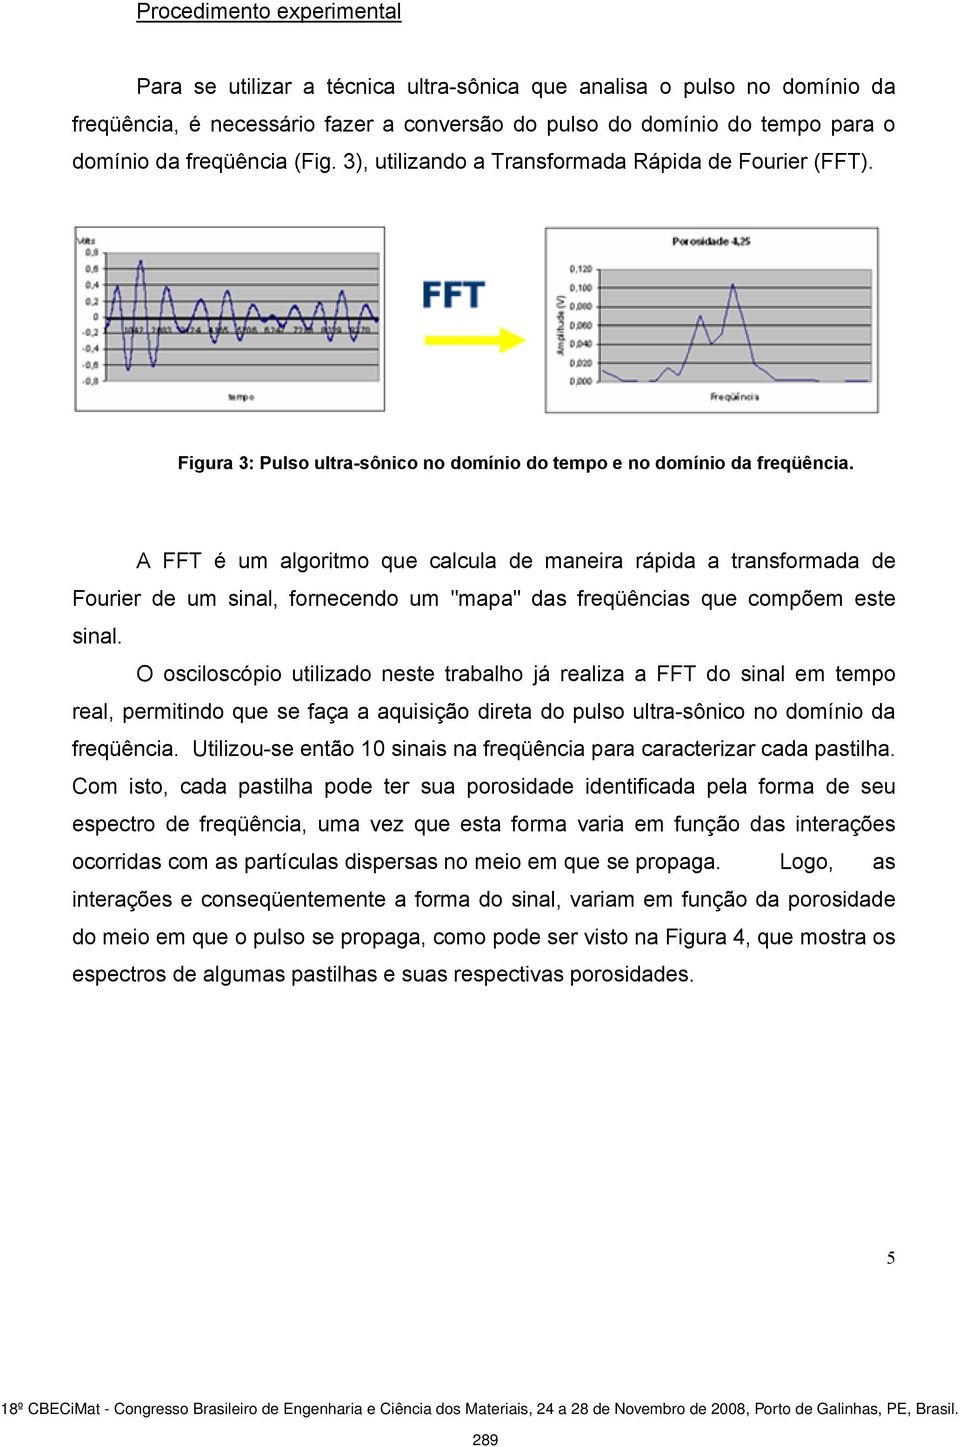 A FFT é um algoritmo que calcula de maneira rápida a transformada de Fourier de um sinal, fornecendo um "mapa" das freqüências que compõem este sinal.